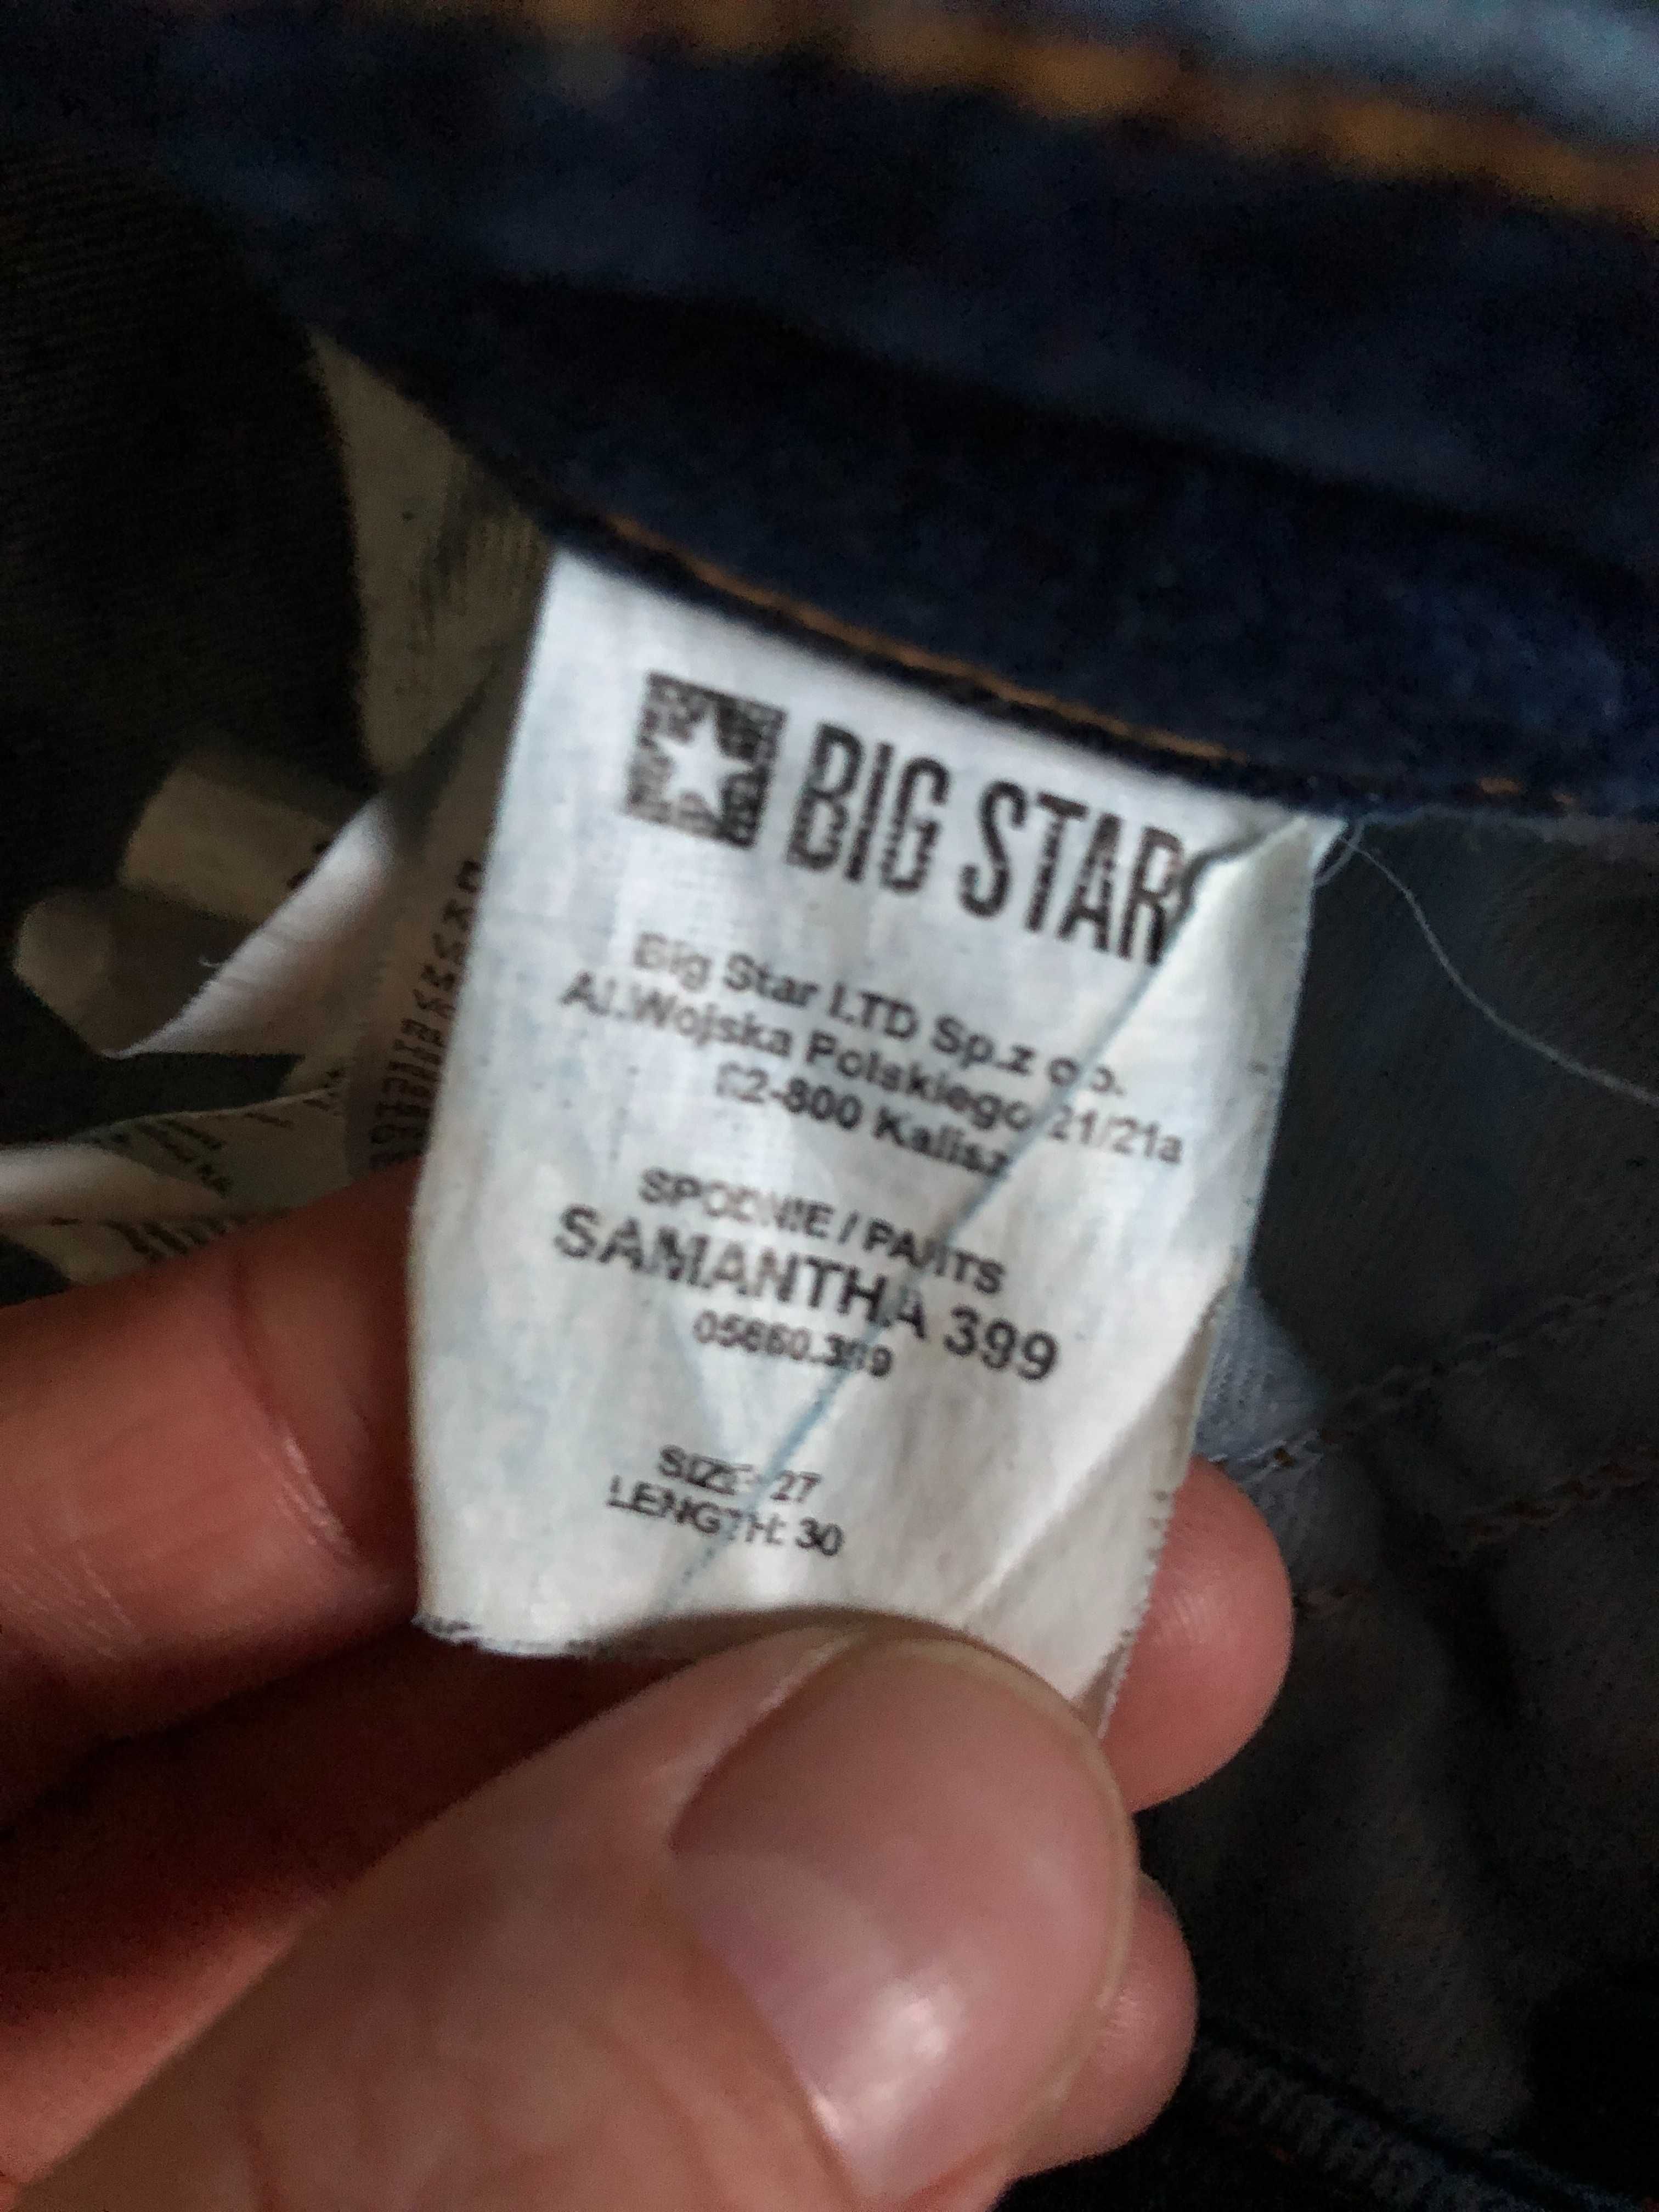 Spodnie jeansowe Big Star Samantha 399 denim jeans granat W27 L30